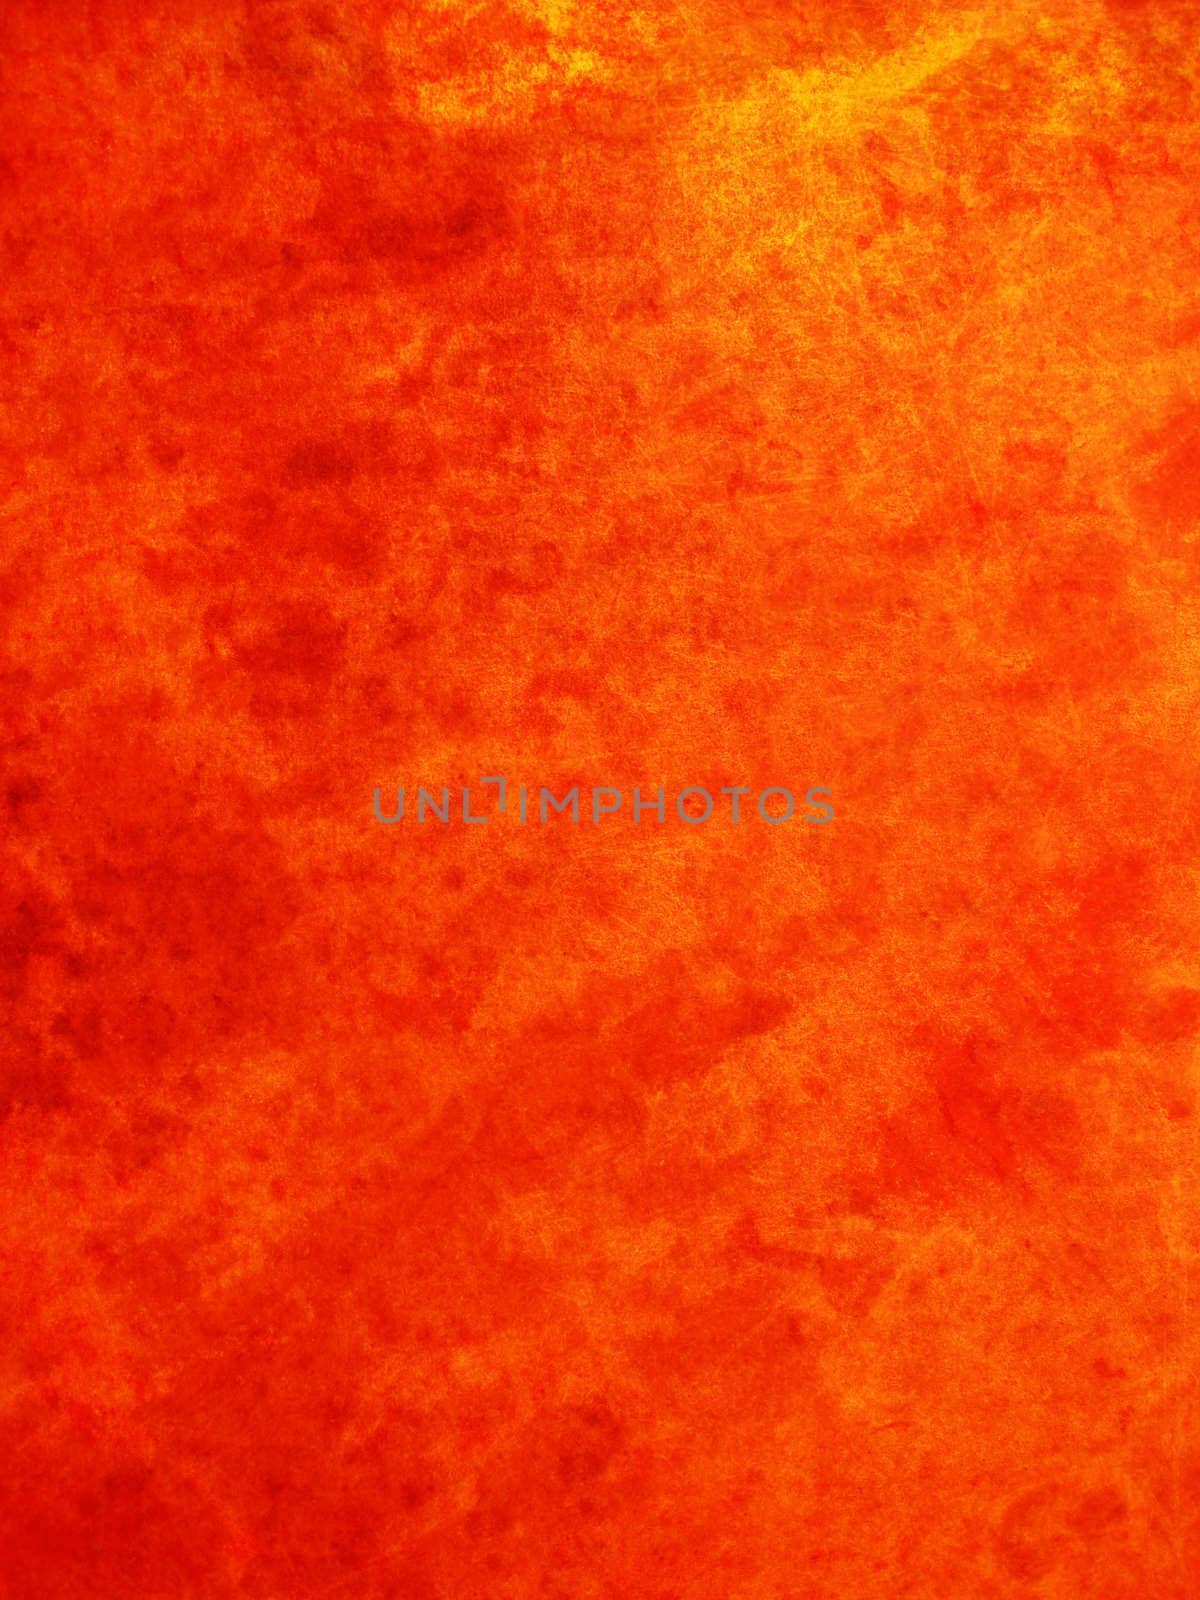 Orange Grunge Background by griffre